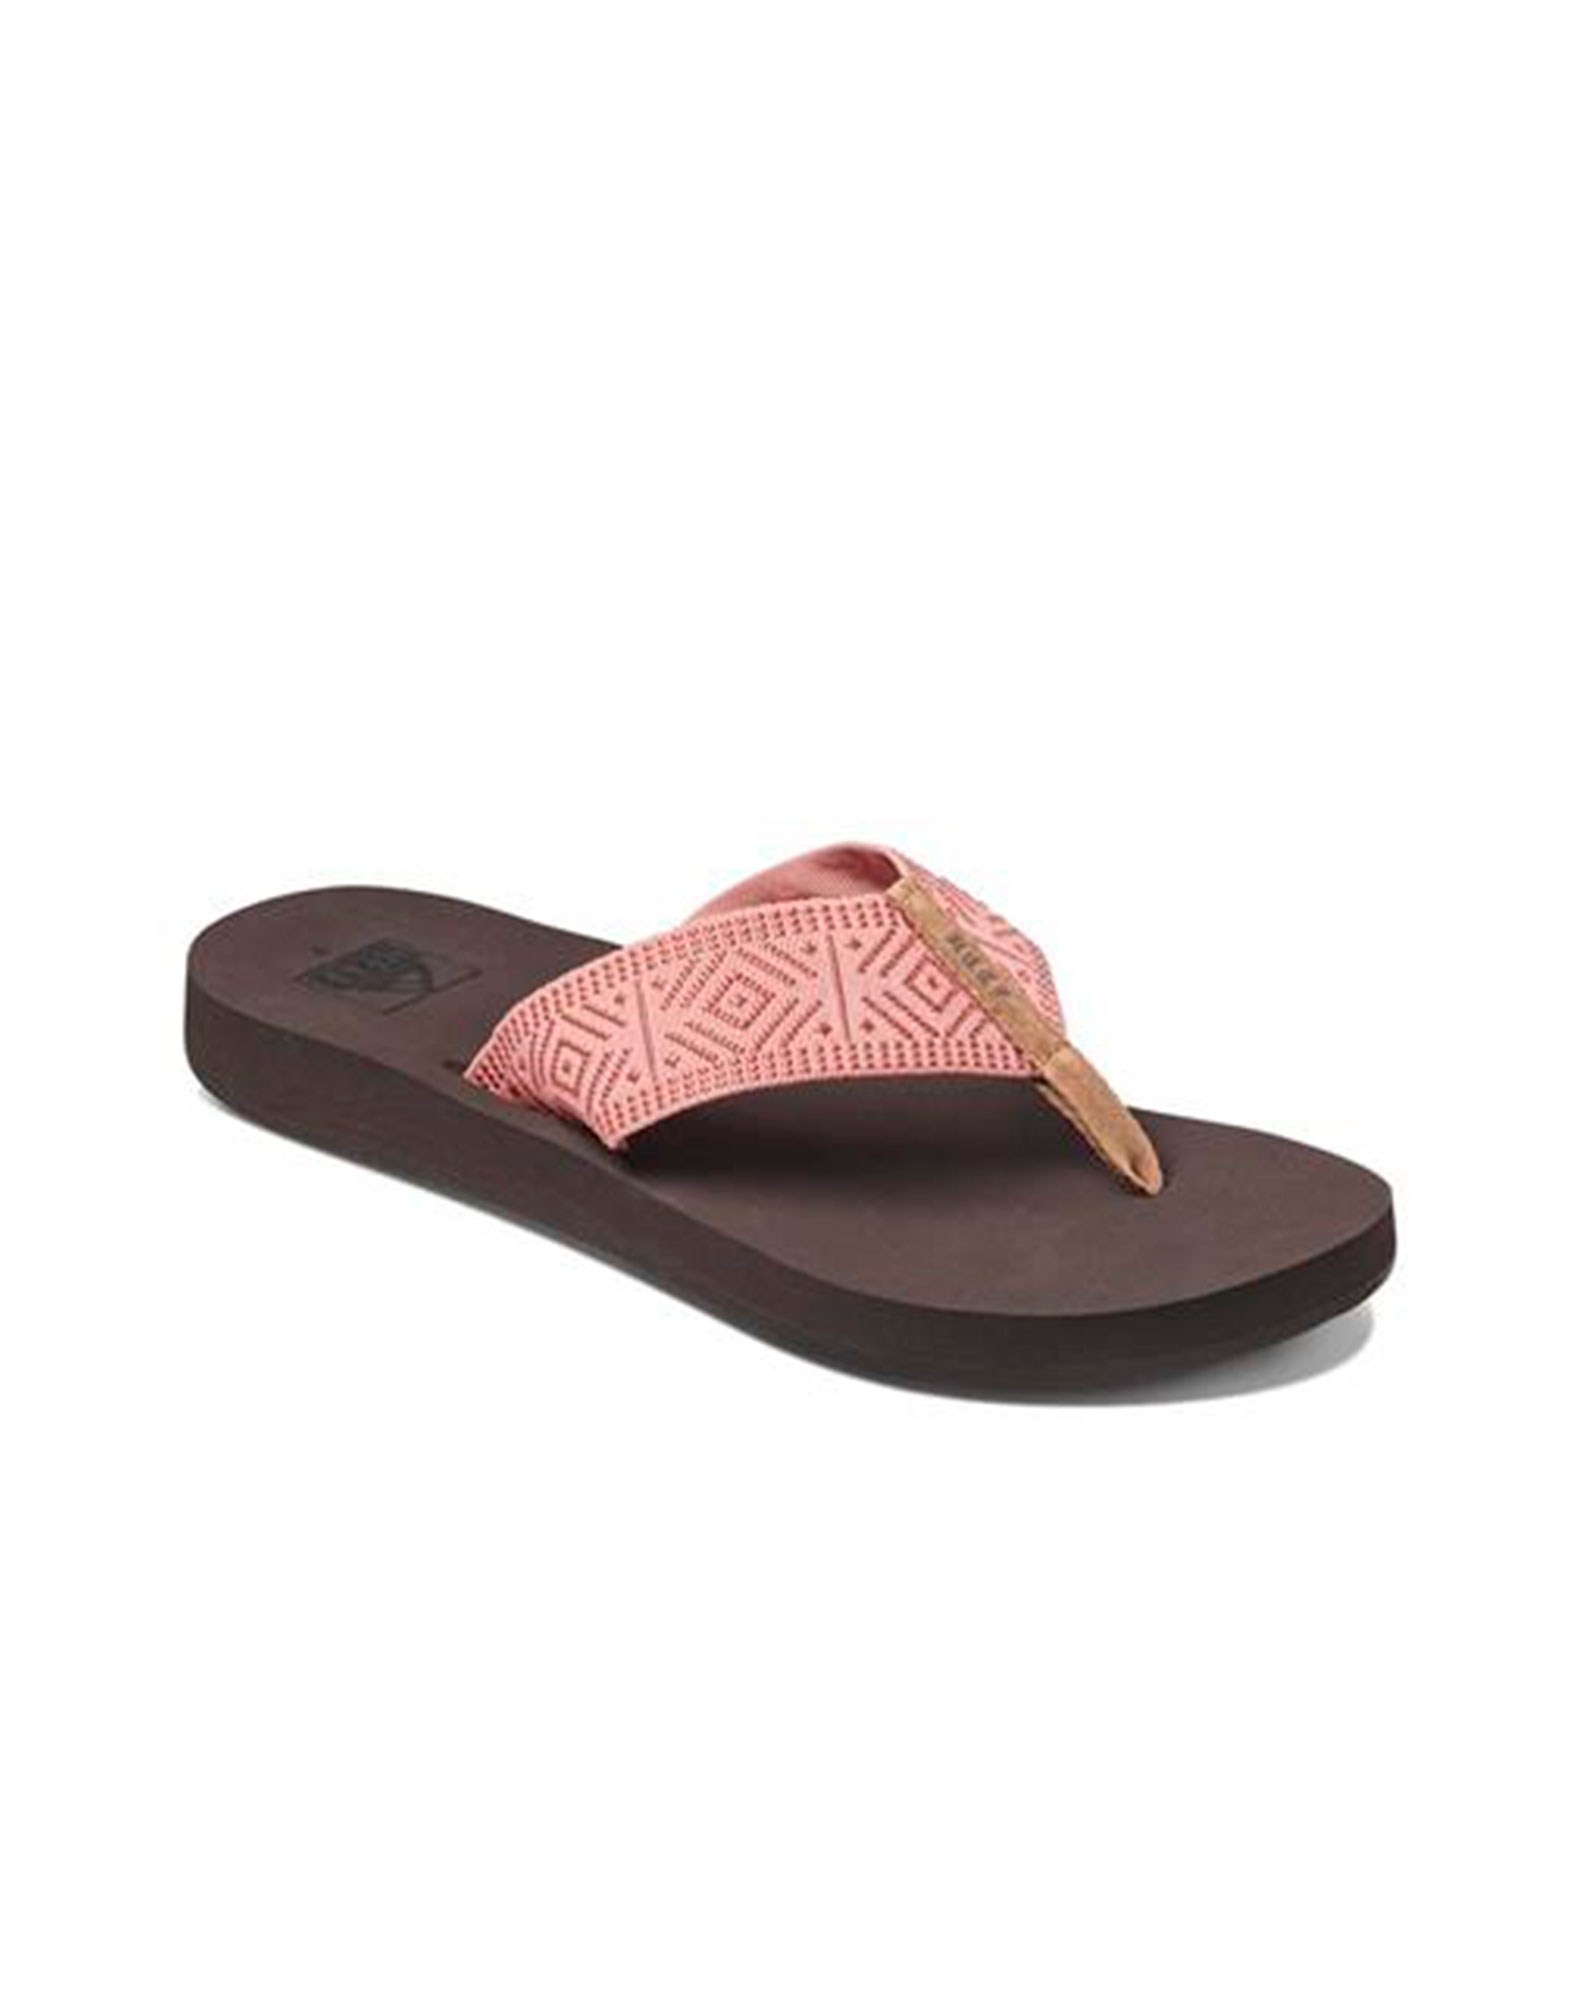 Køb Reef Spring Woven sandaler til lyserød-brun